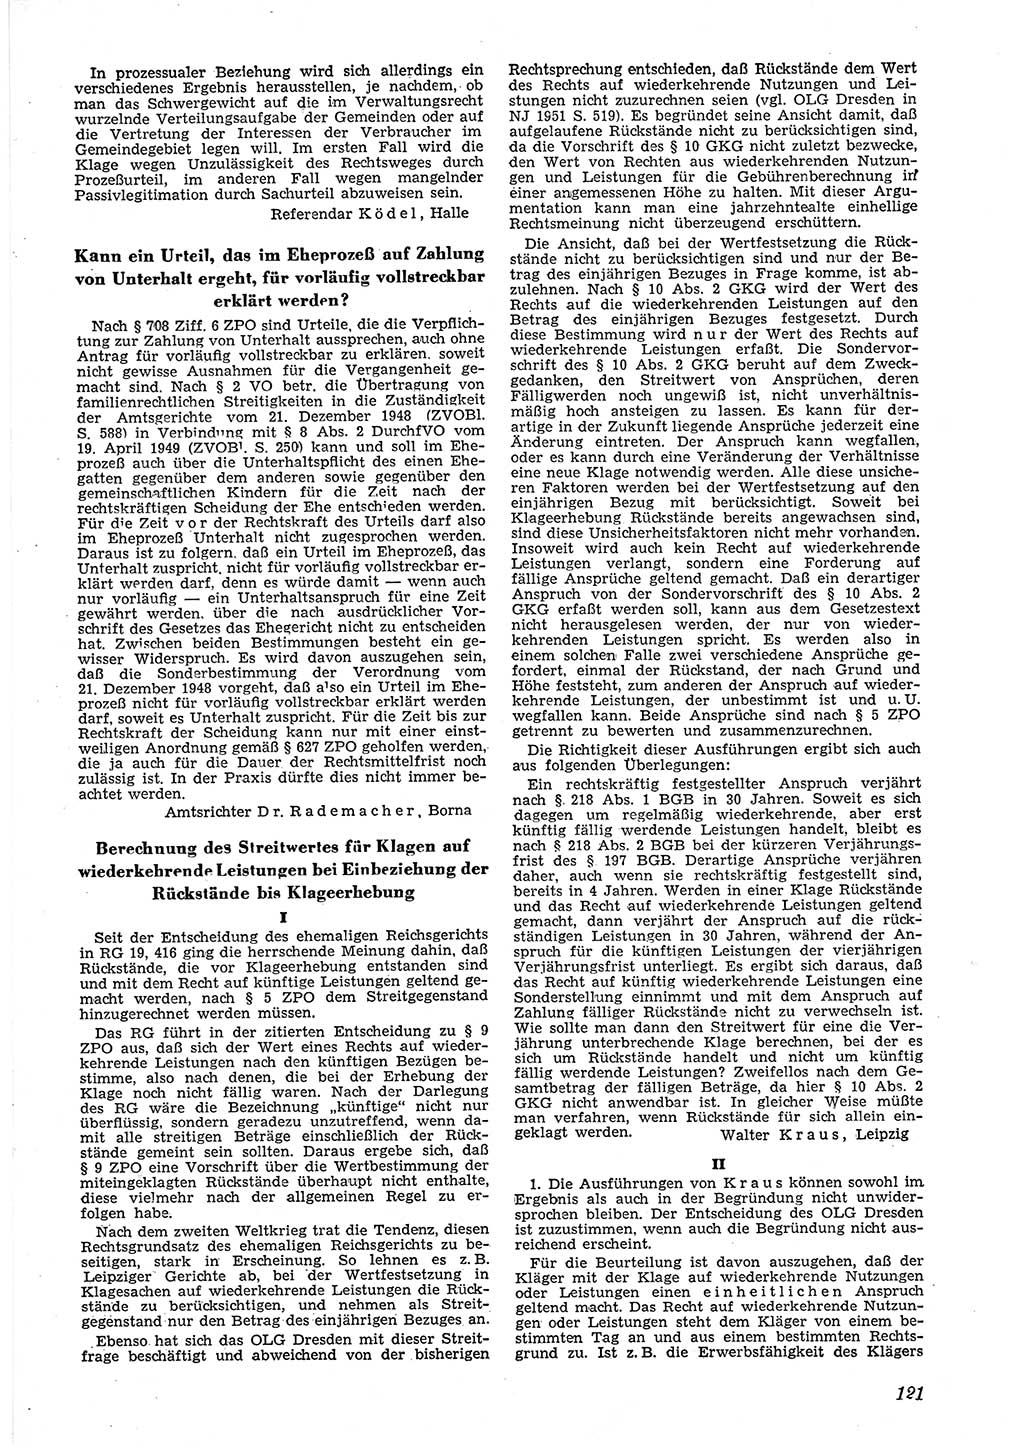 Neue Justiz (NJ), Zeitschrift für Recht und Rechtswissenschaft [Deutsche Demokratische Republik (DDR)], 6. Jahrgang 1952, Seite 121 (NJ DDR 1952, S. 121)